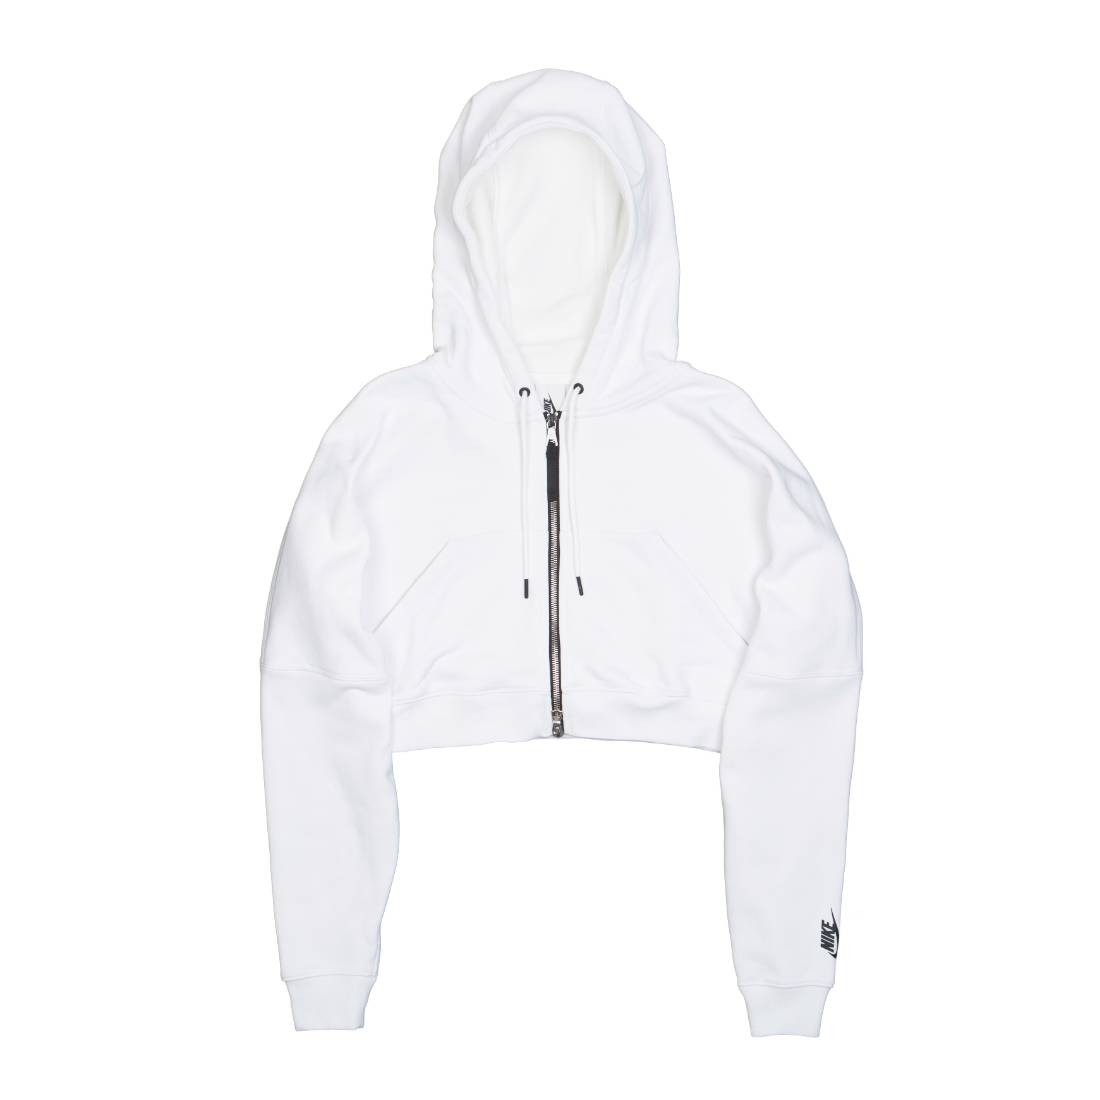 nikelab hoodie white